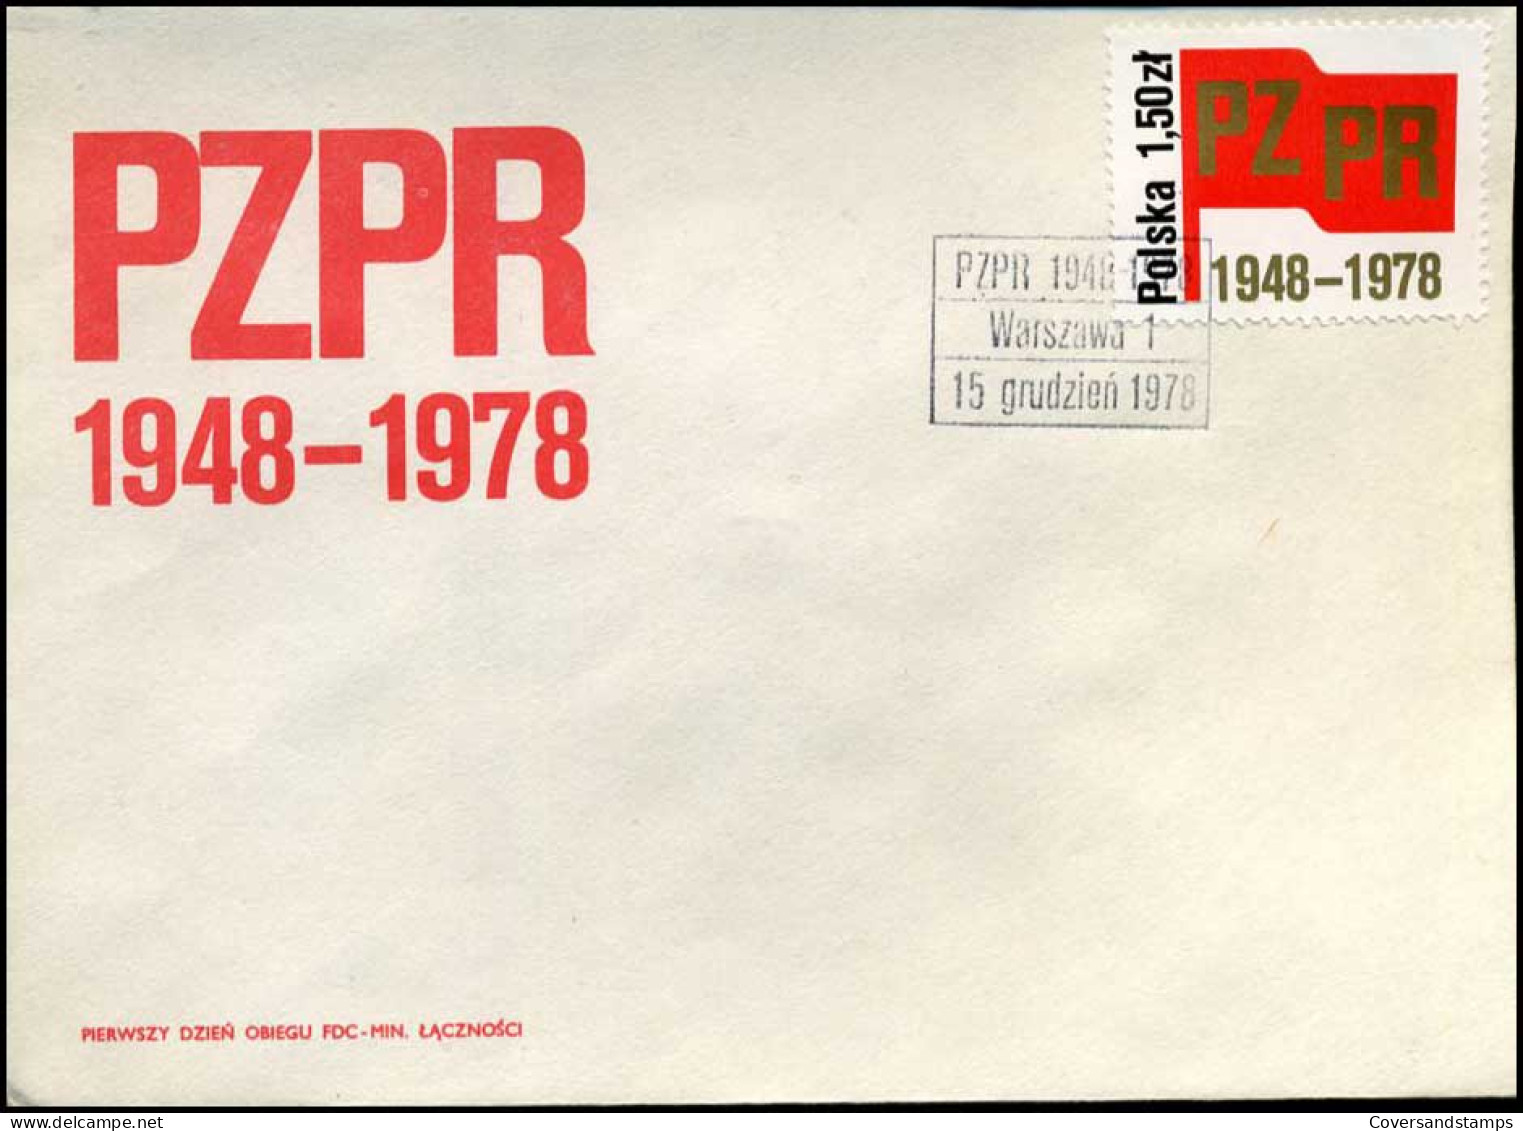 Polen - FDC - PZPR 1948-1978 - FDC